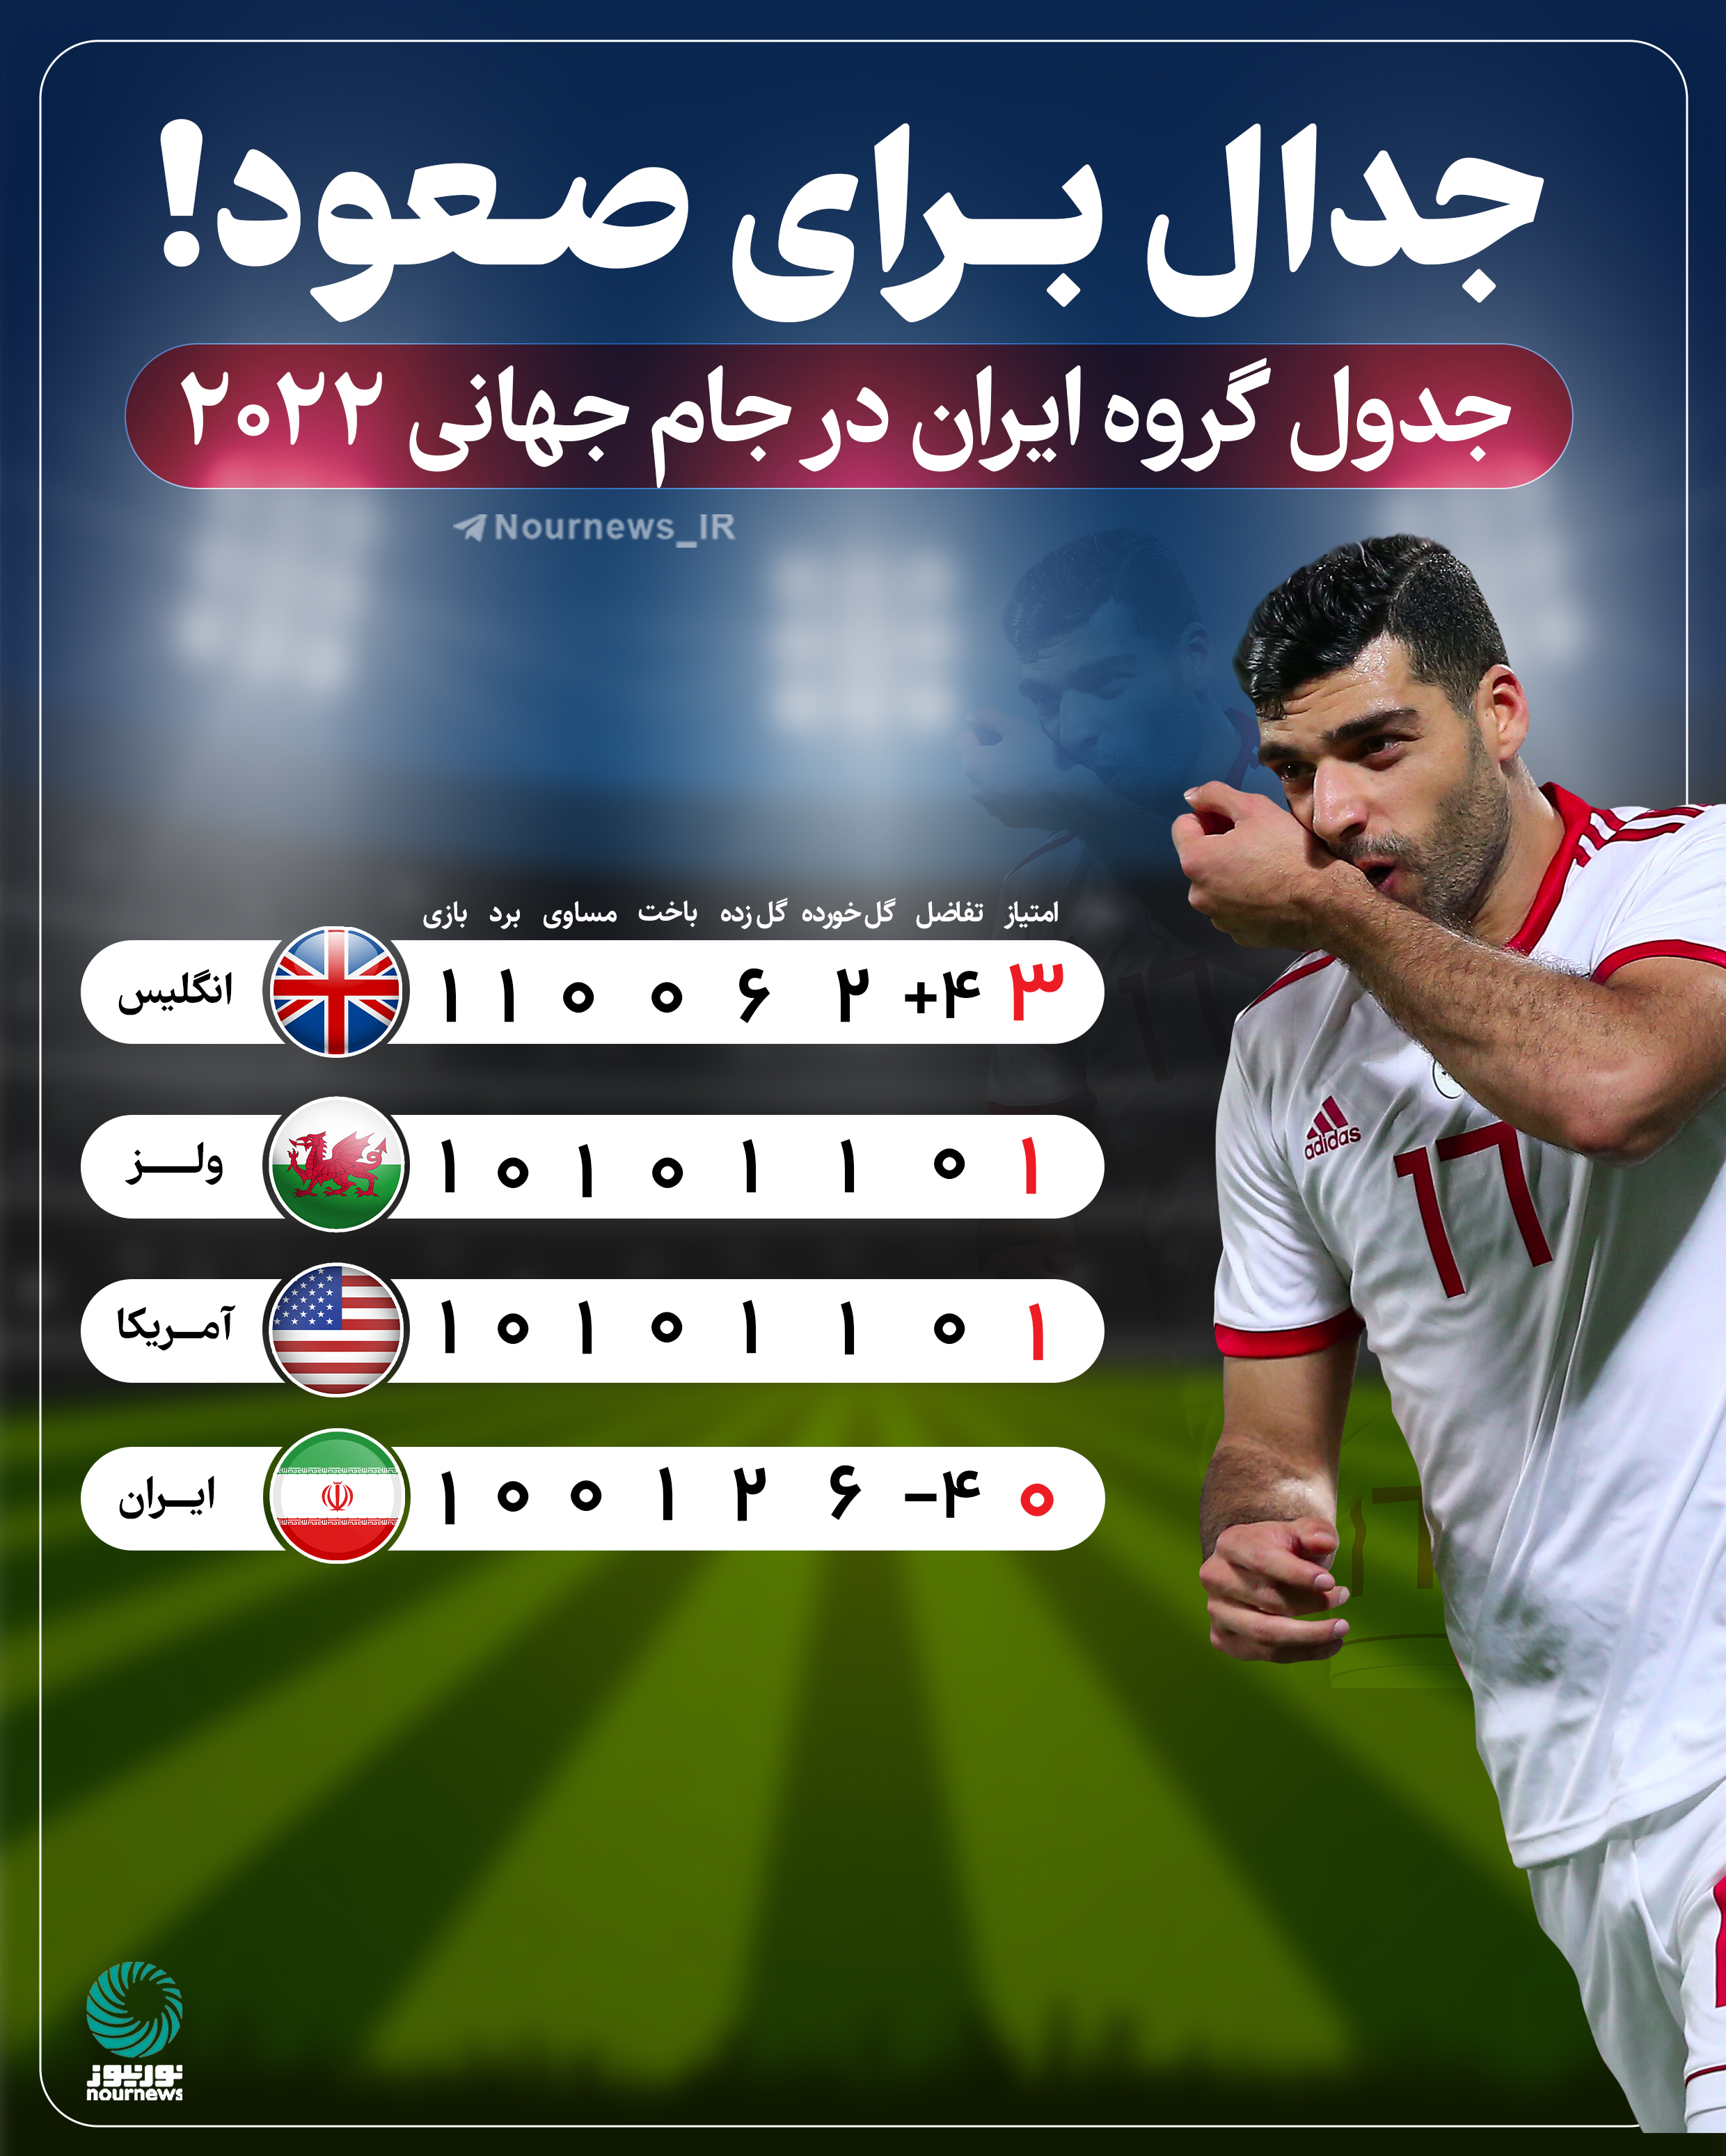 جدال برای صعود؛ جدول گروه ایران در جام جهانی 2022